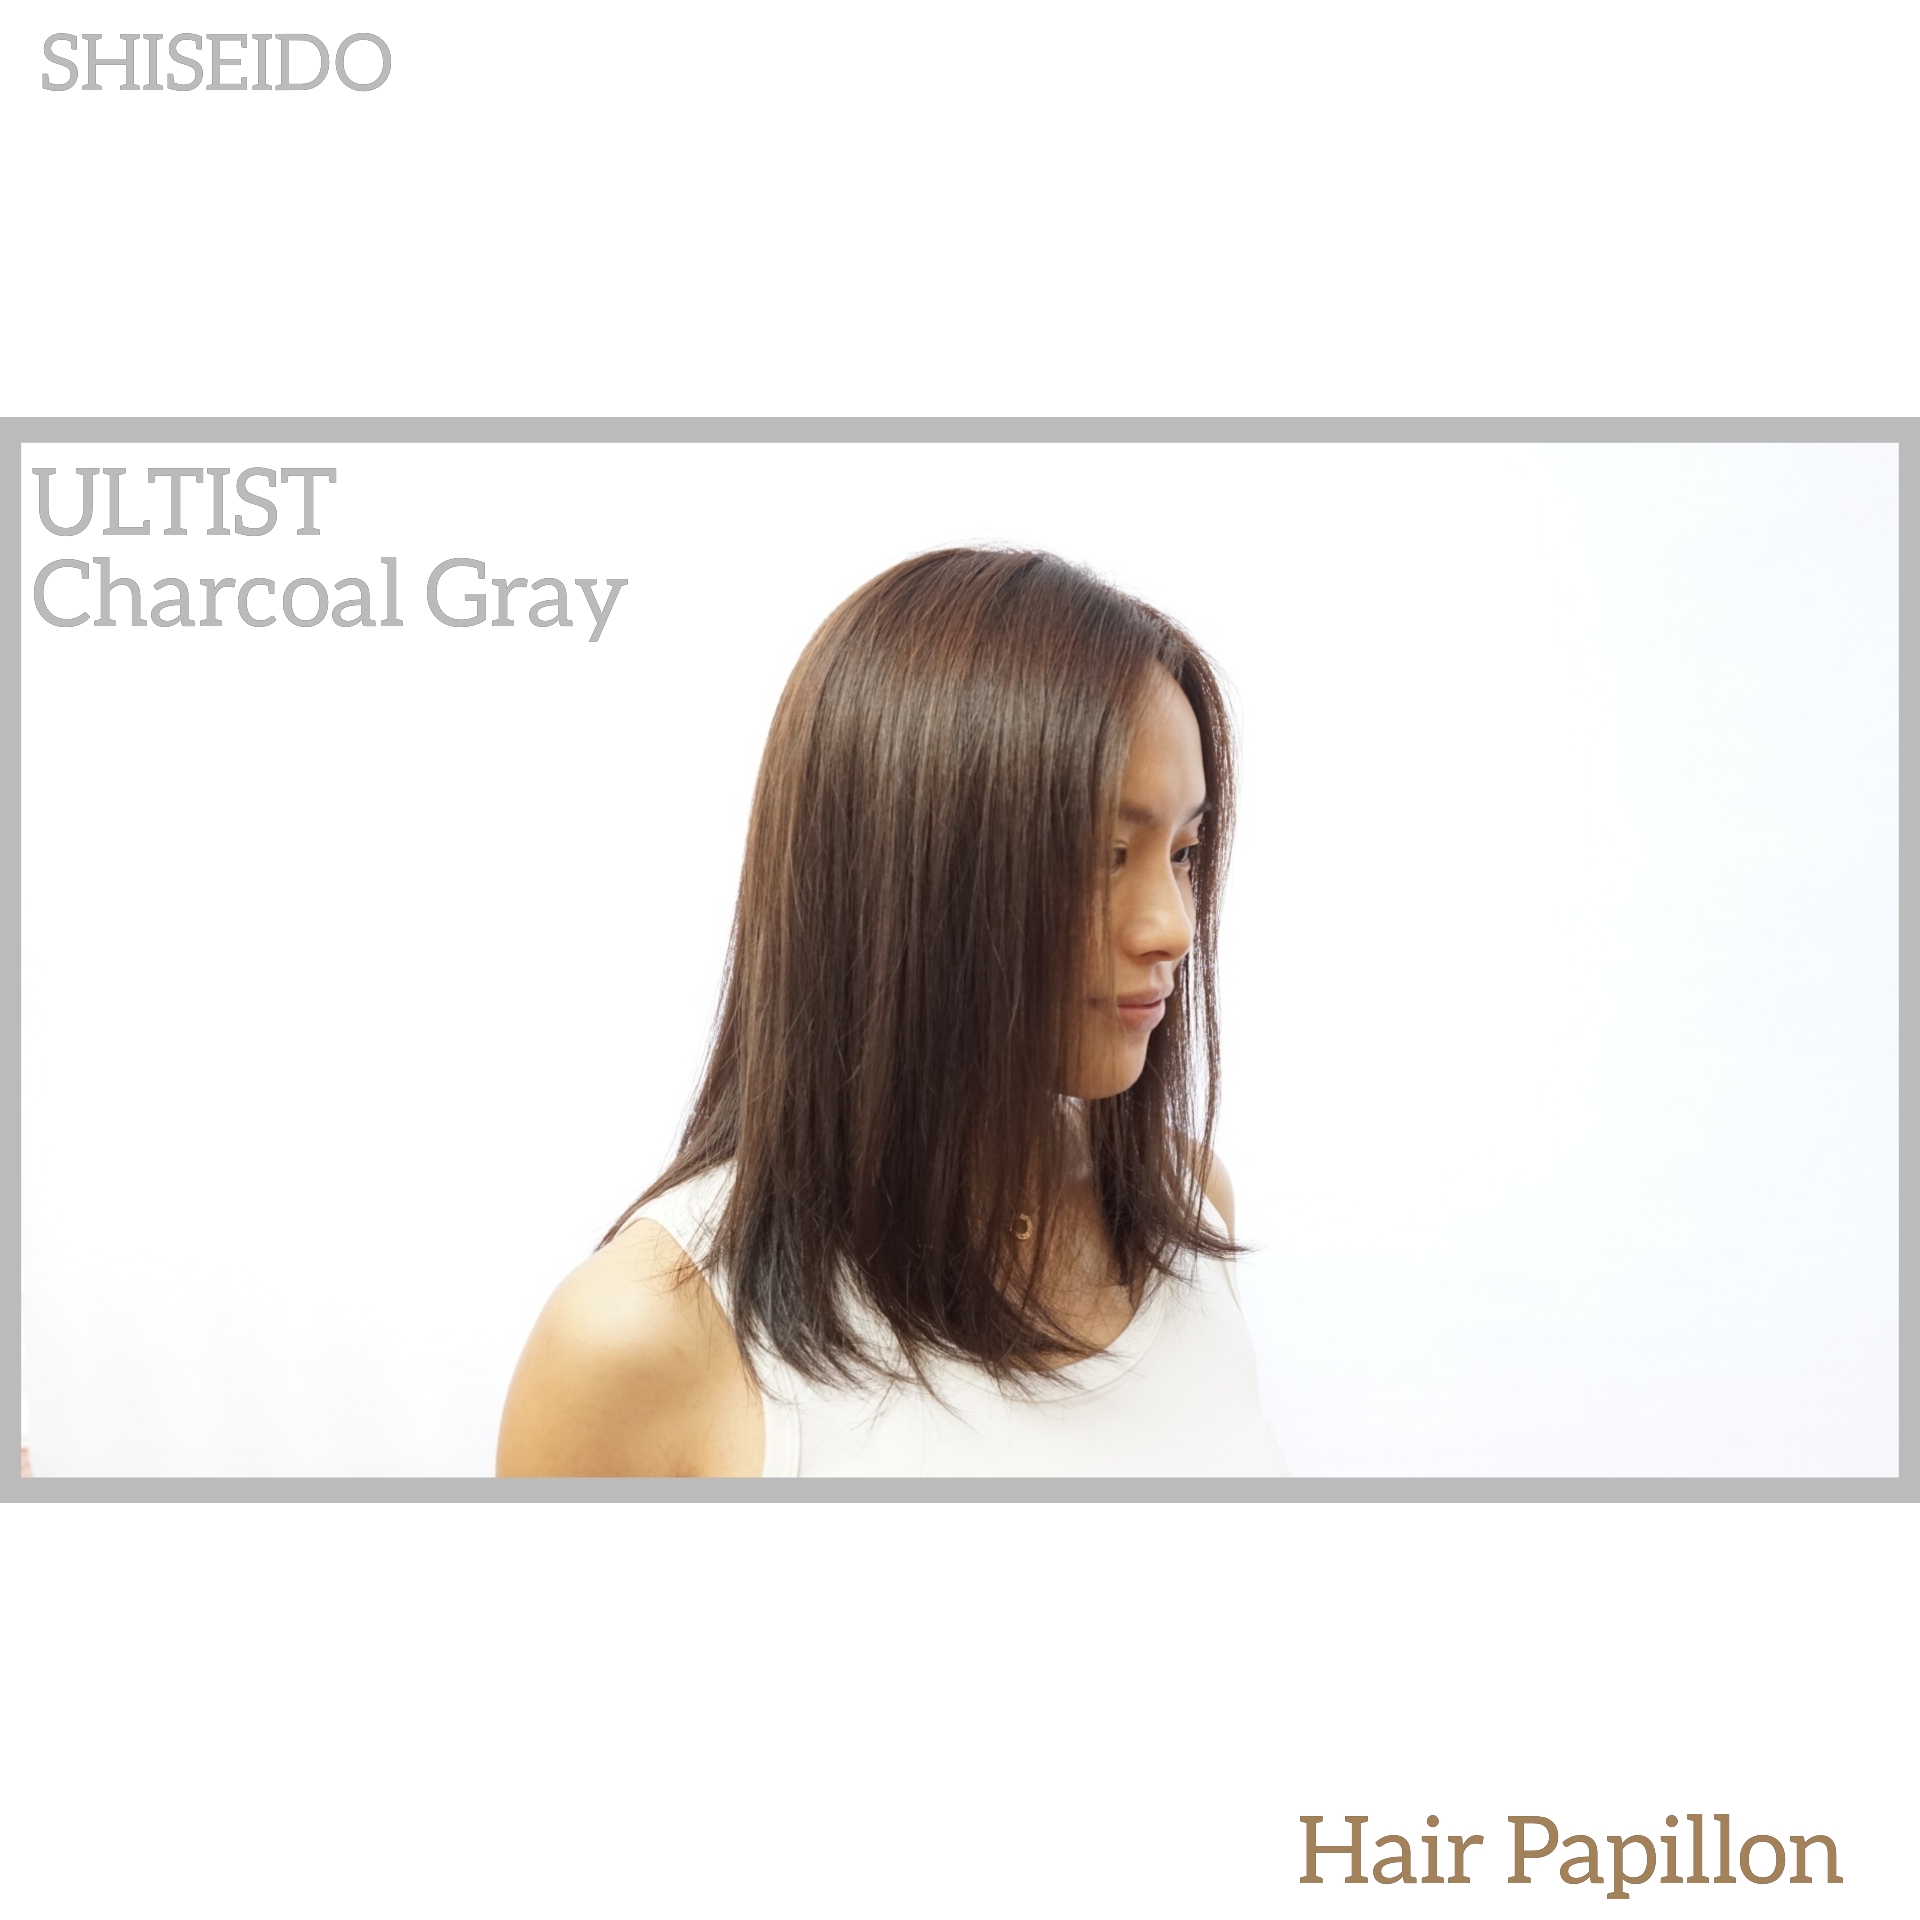 髮型作品参考:shiseido color CG